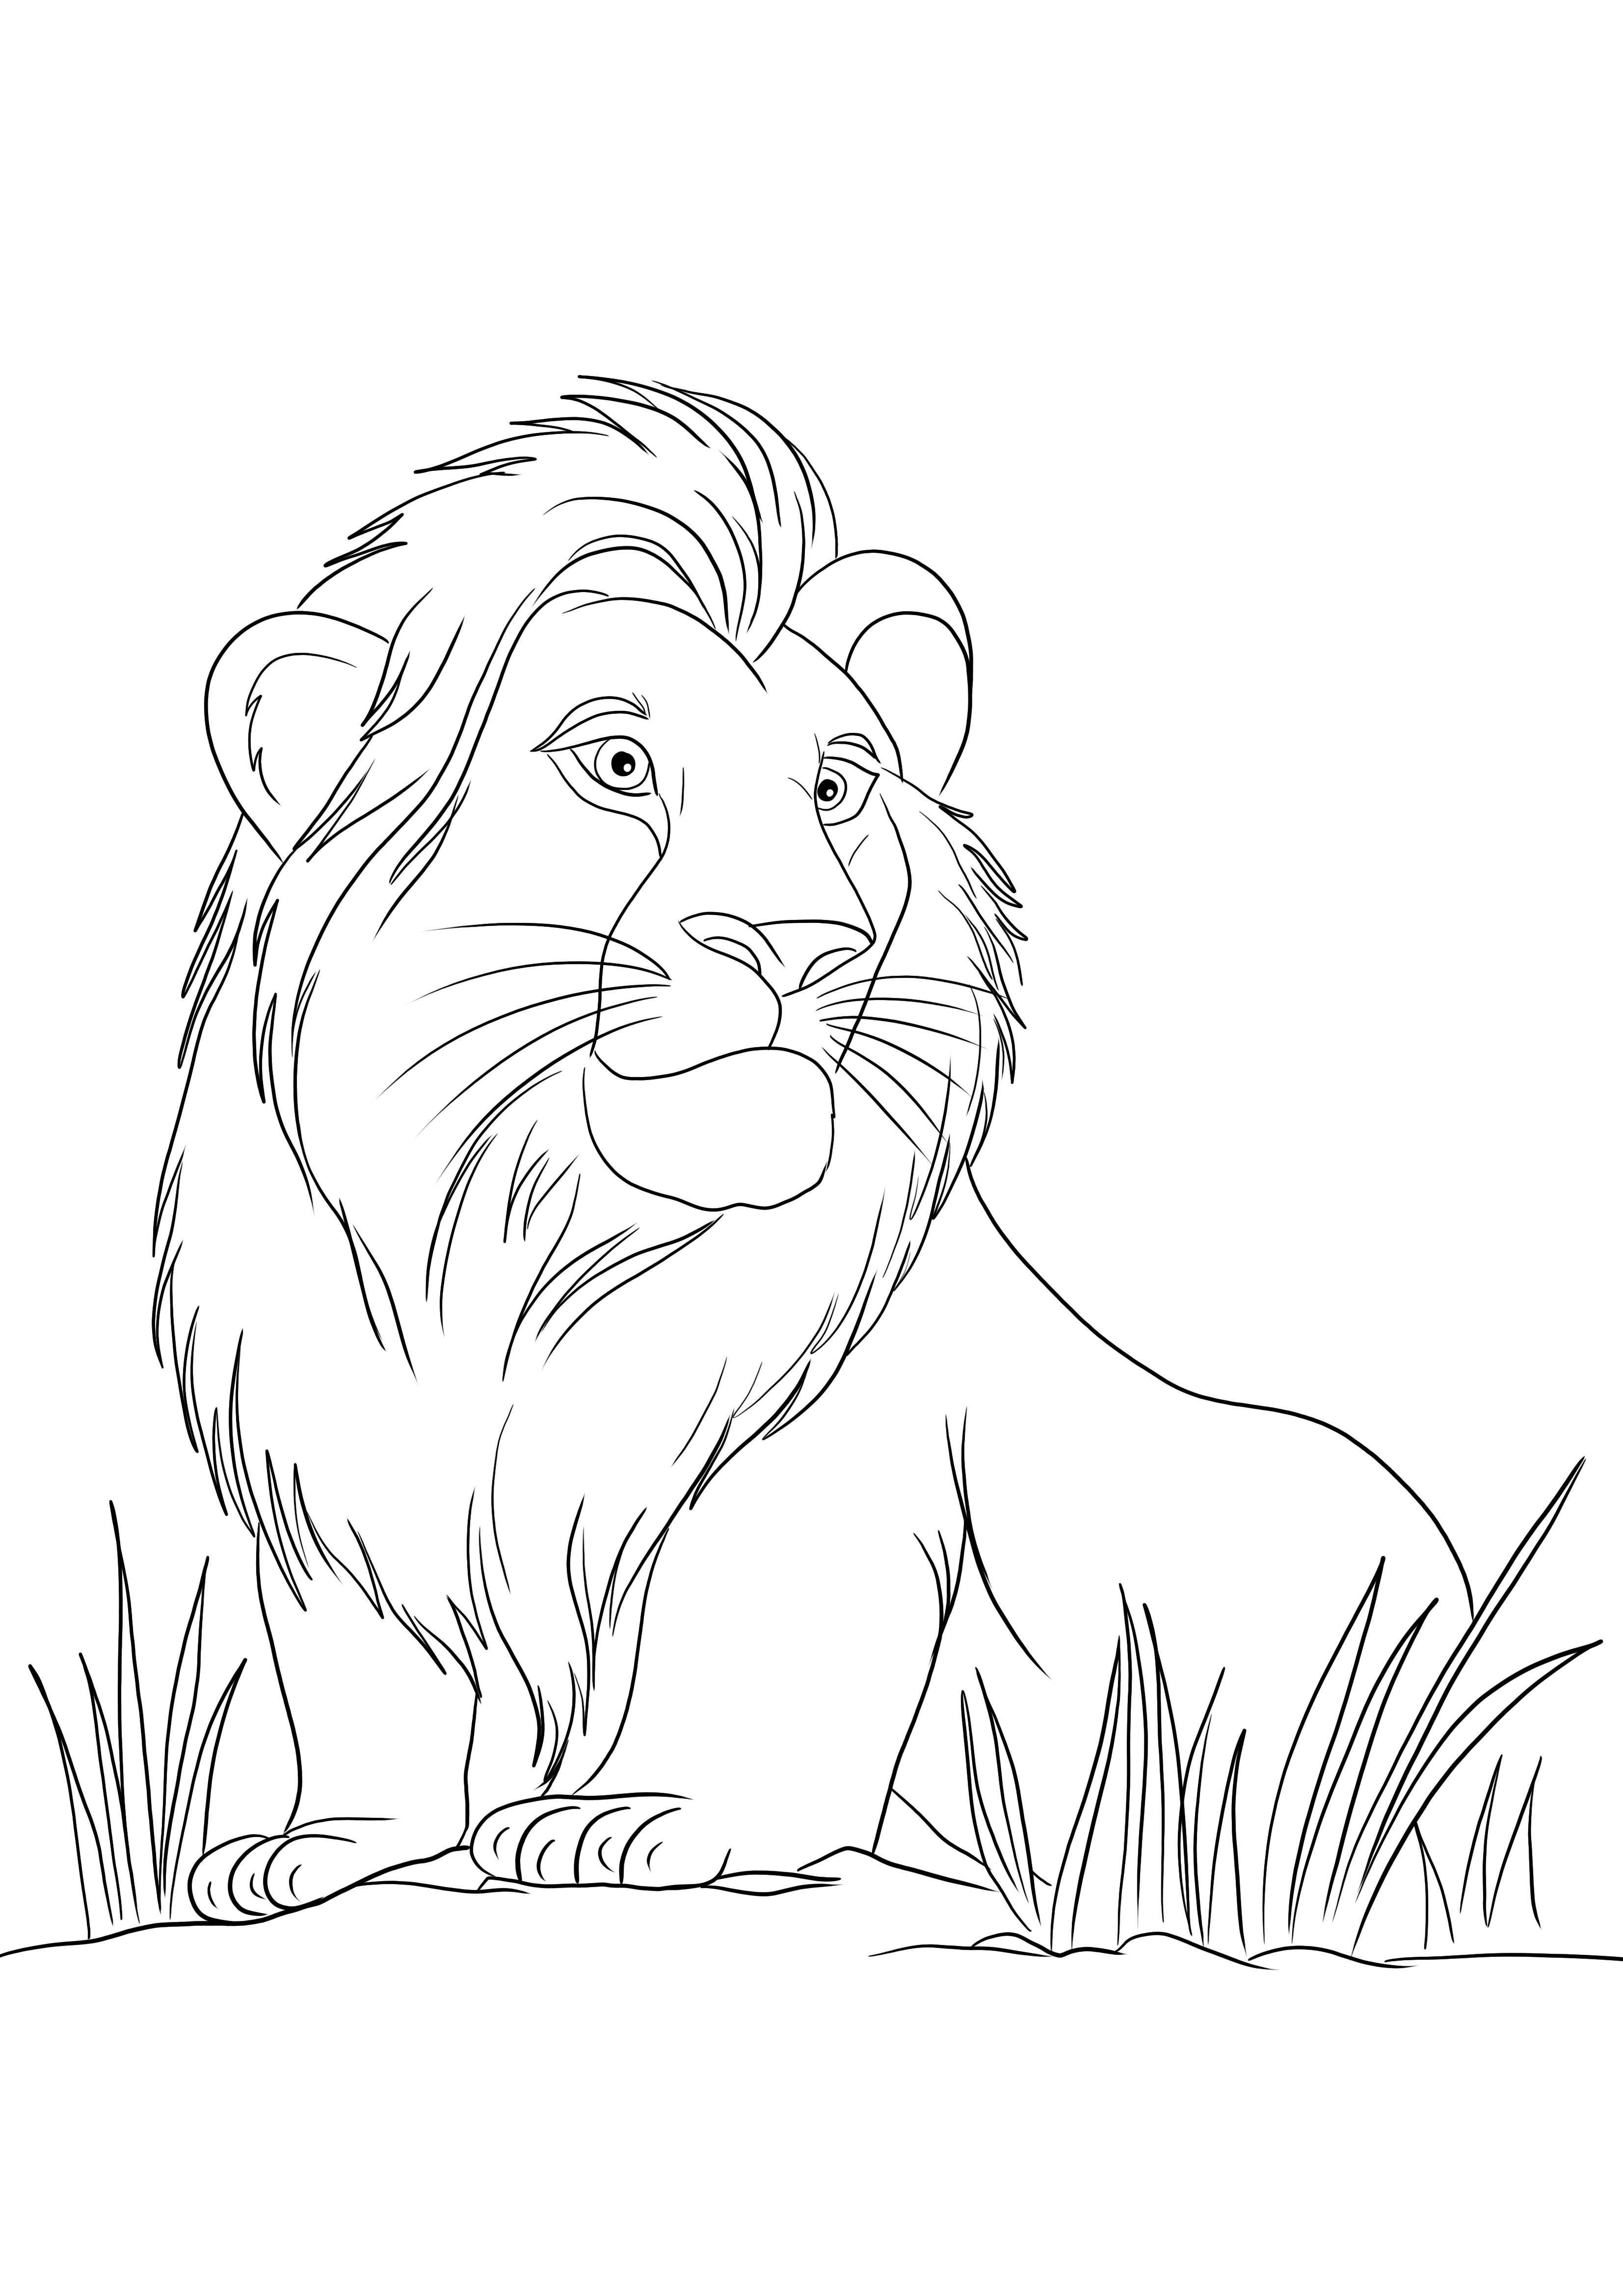 Simba z filmu Disney Lion's King do wydrukowania i pokolorowania za darmo